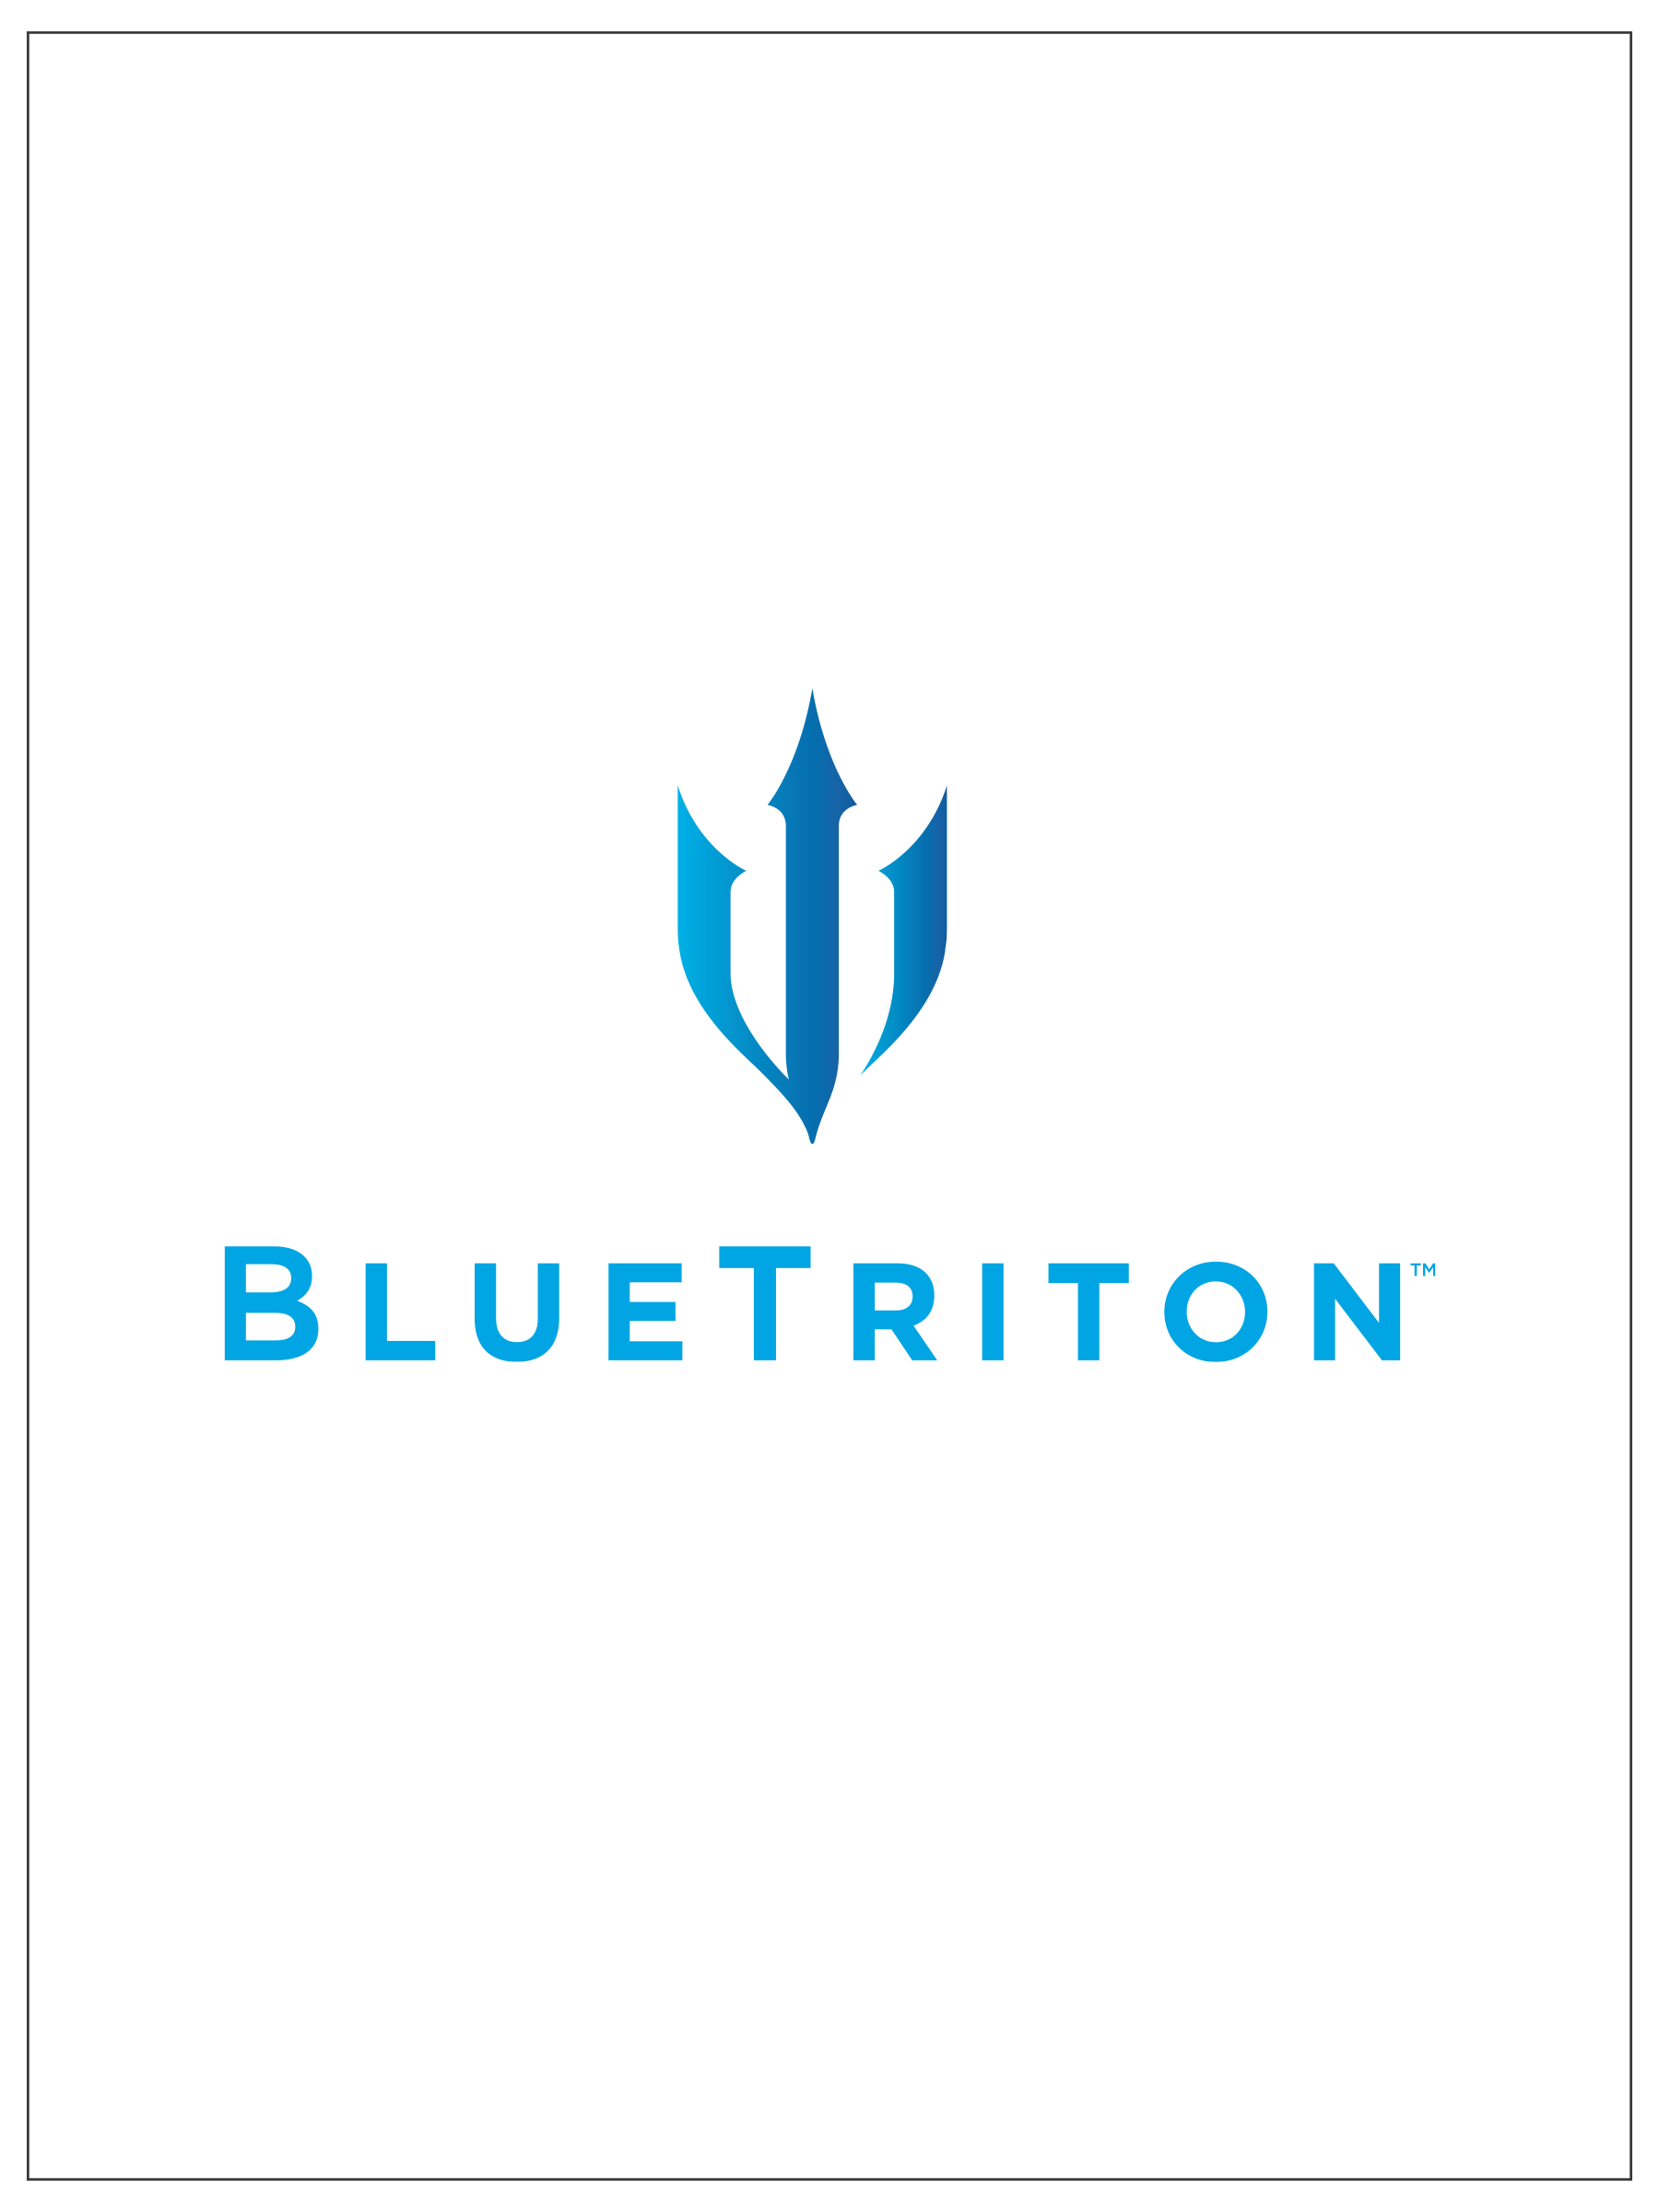 BlueTriton Brands Ad